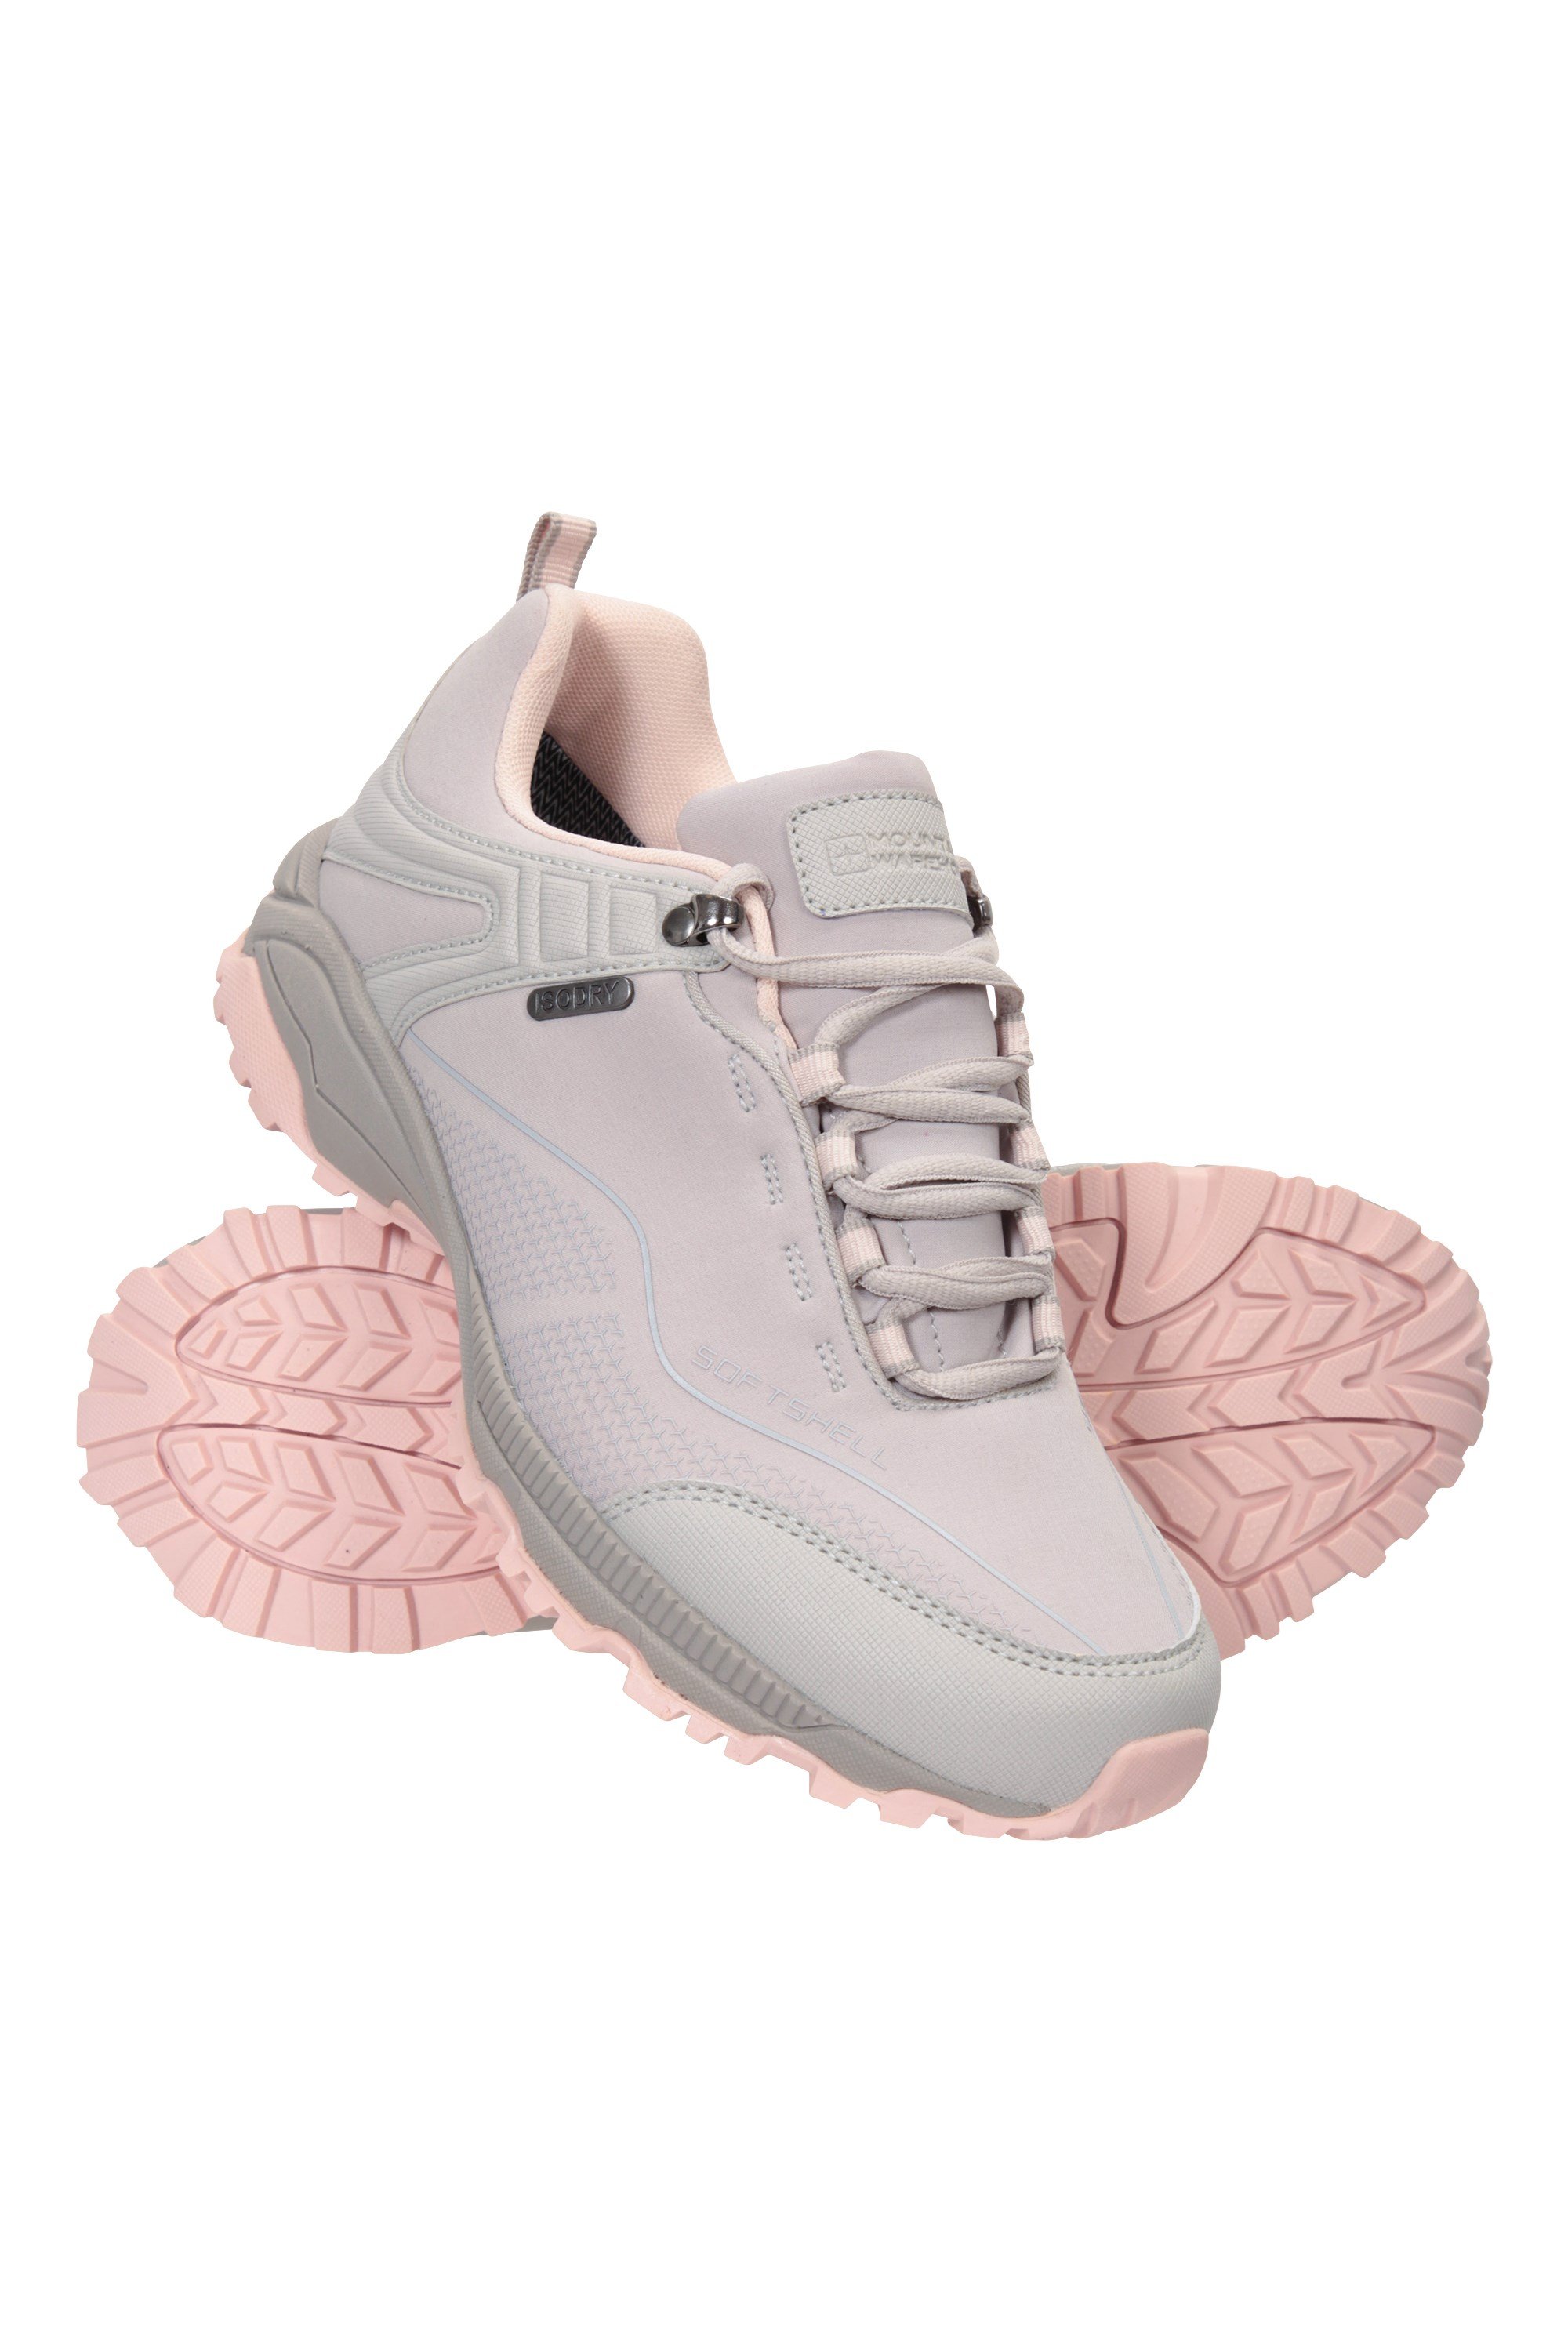 Collie Waterproof Womens Shoes - Beige